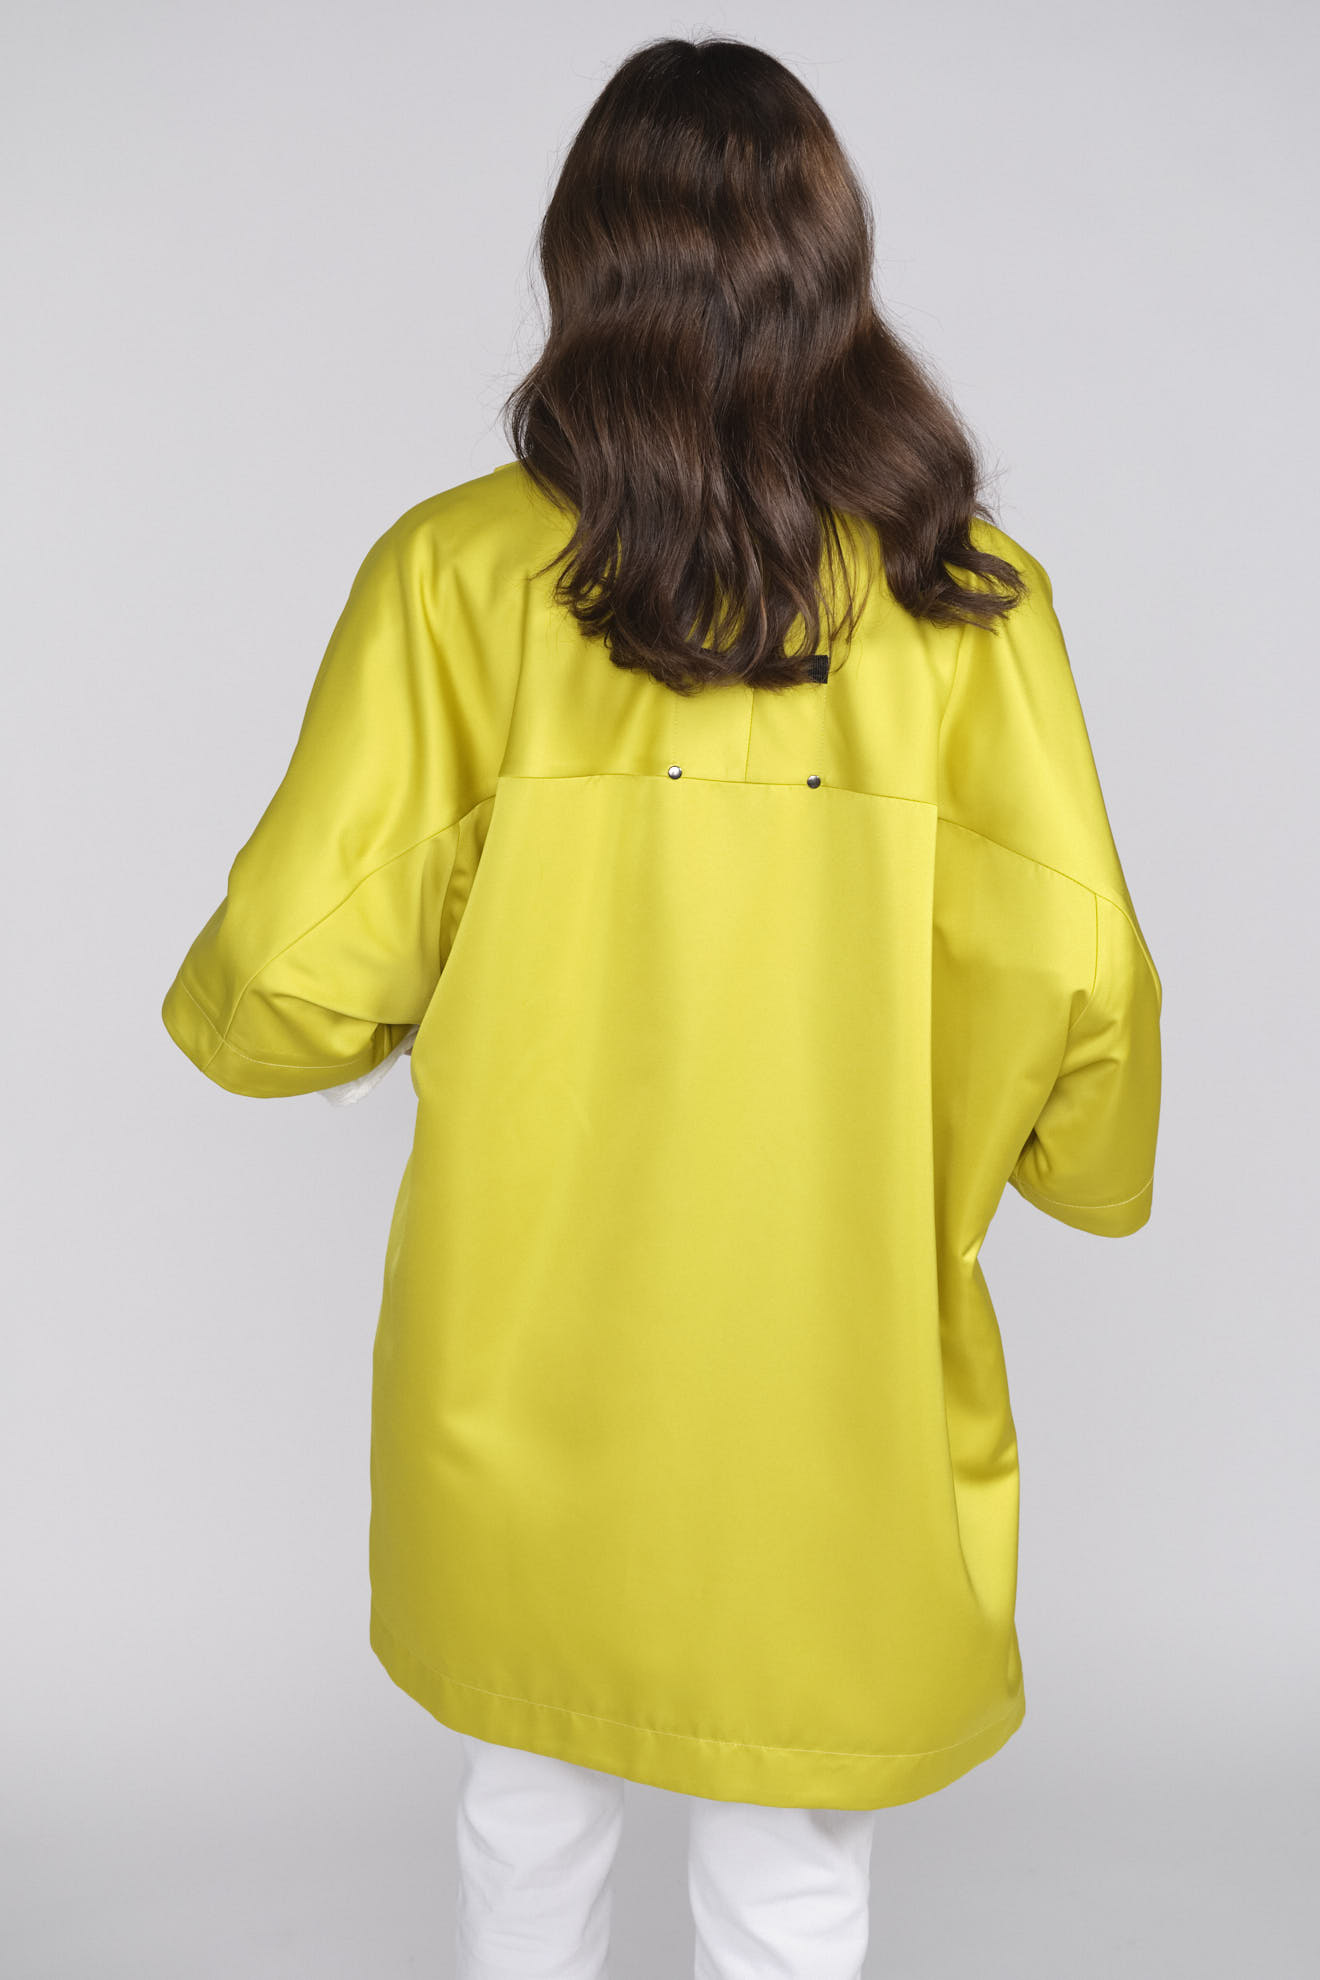 Ahirain Oversized Jacke mit Knopfleiste und Stehkragen gelb M